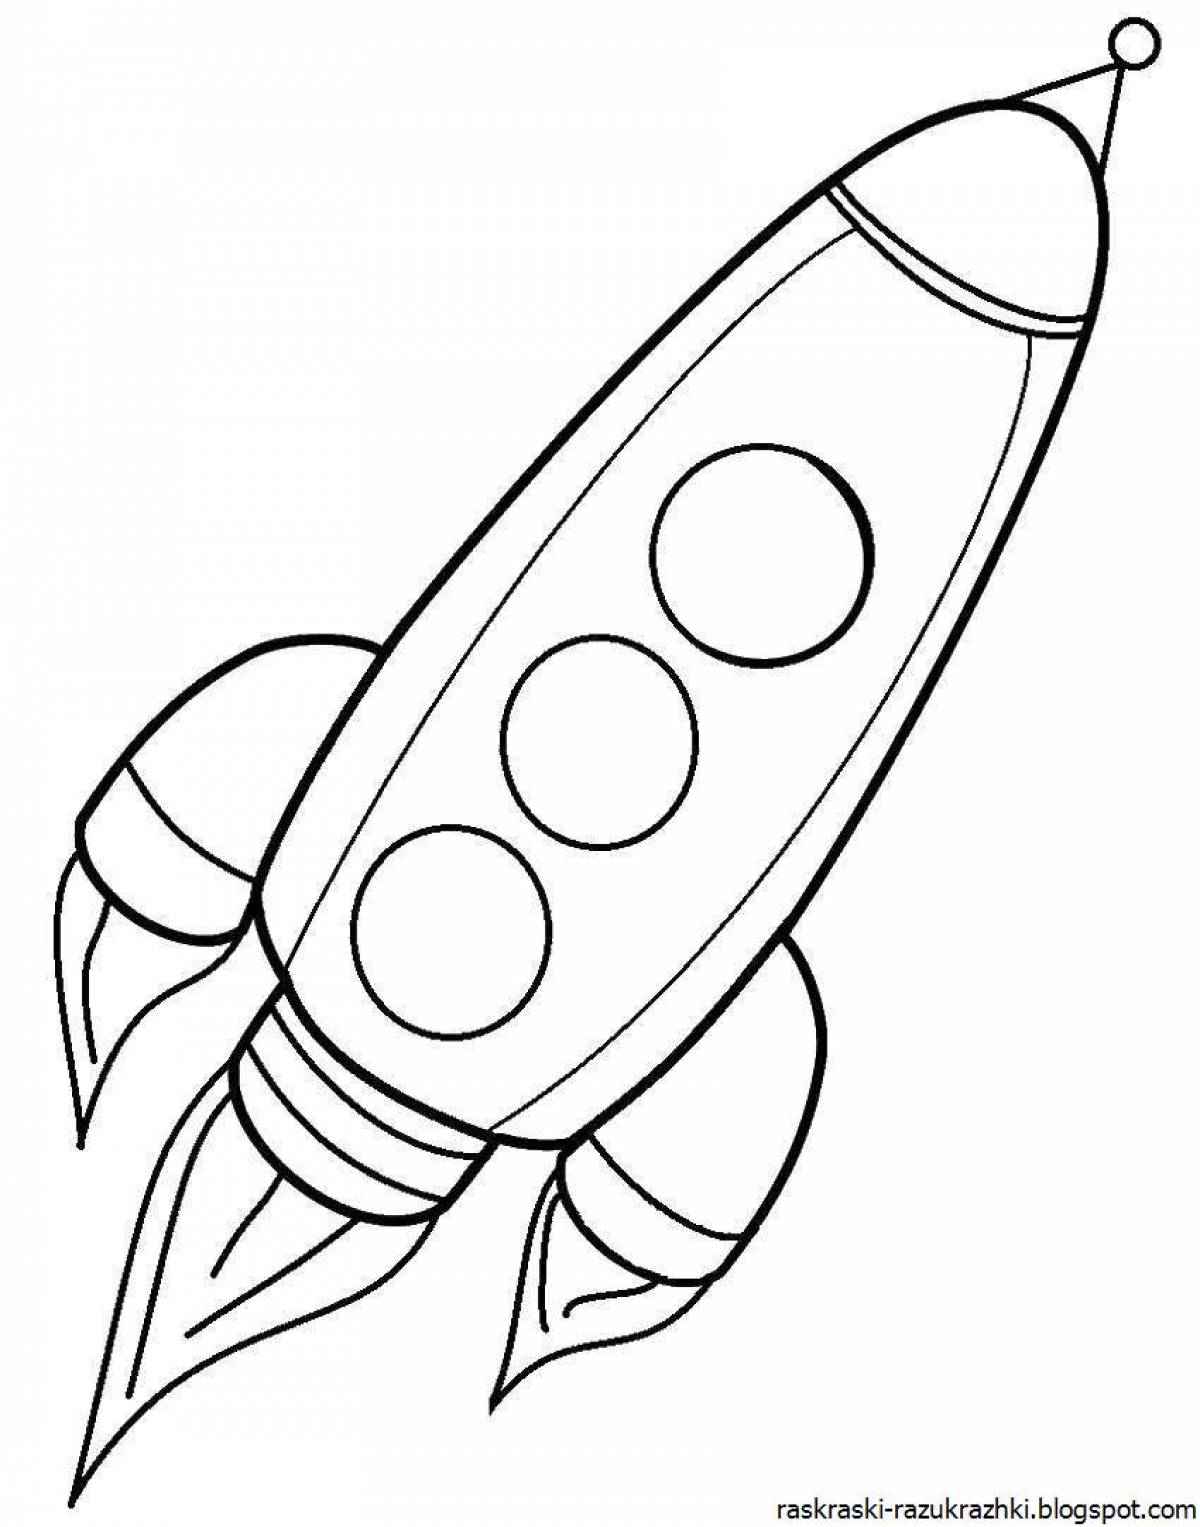 Зымыран раскраска. Ракета раскраска. Ракета раскраска для детей. Космическая ракета раскраска. Раскраска ракета в космосе для детей.